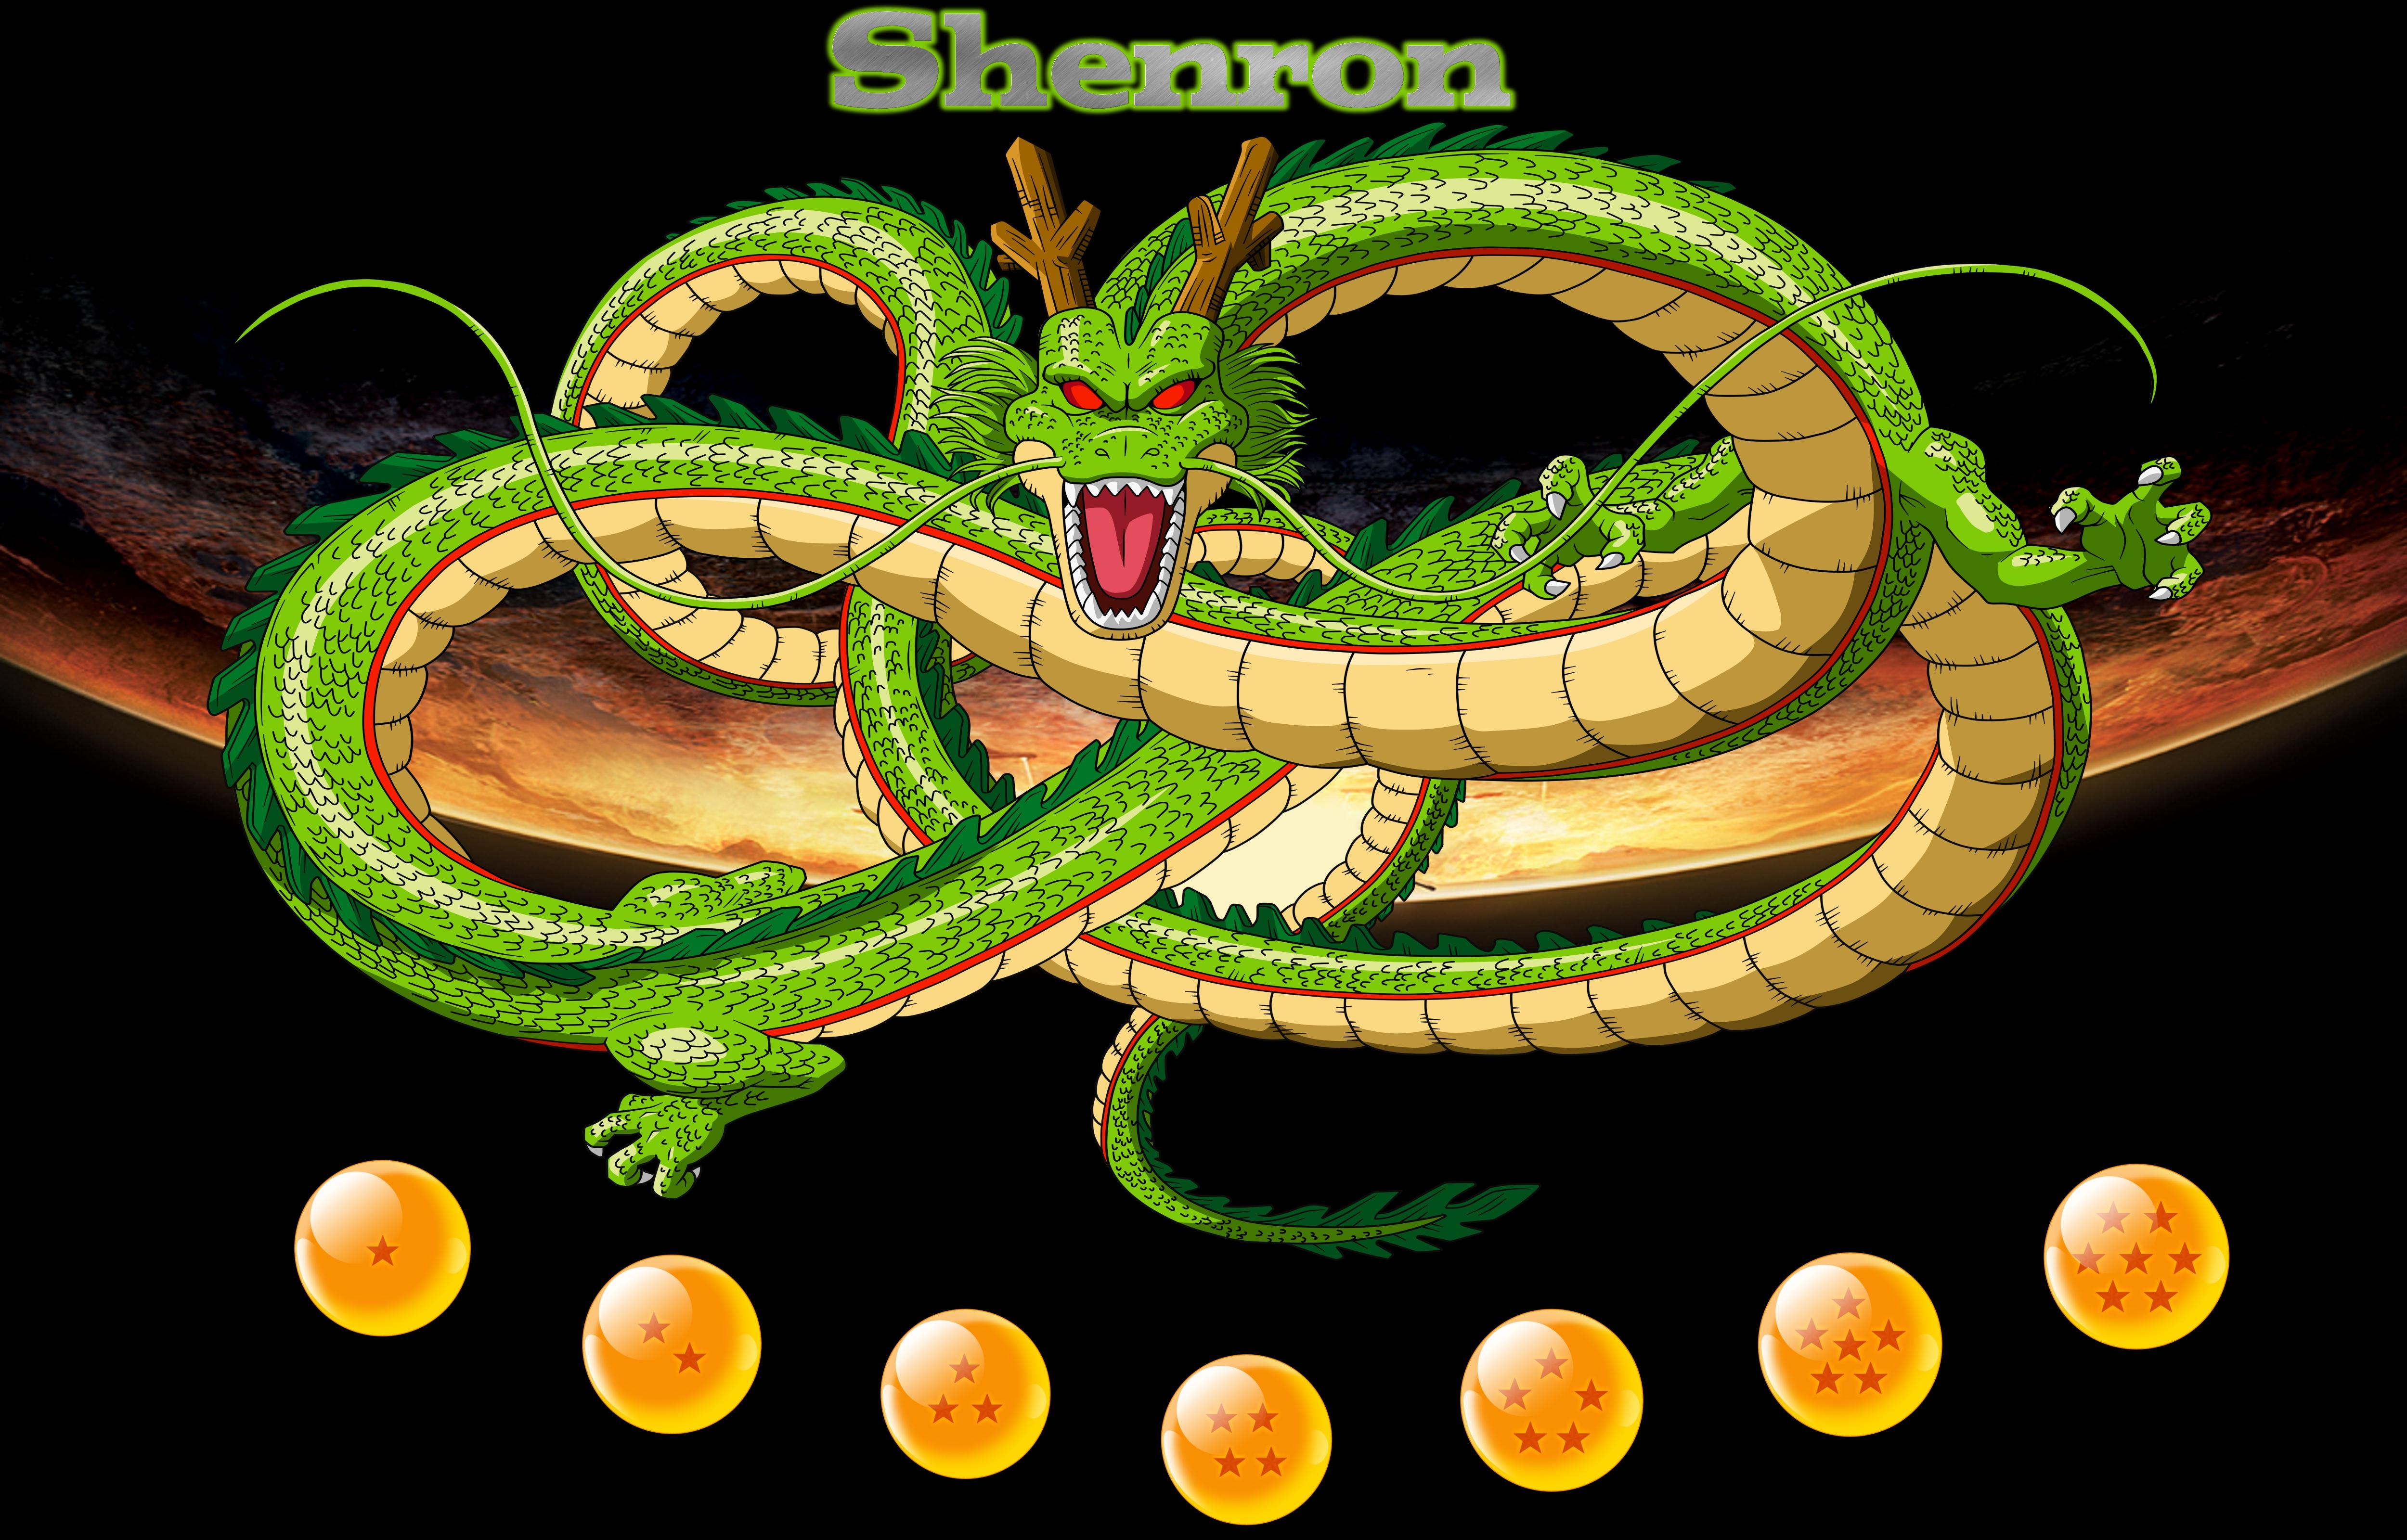 Shenron Wallpaper. Shenron Wallpaper, Dragon Ball Z Shenron Wallpaper and Goku Shenron Wallpaper